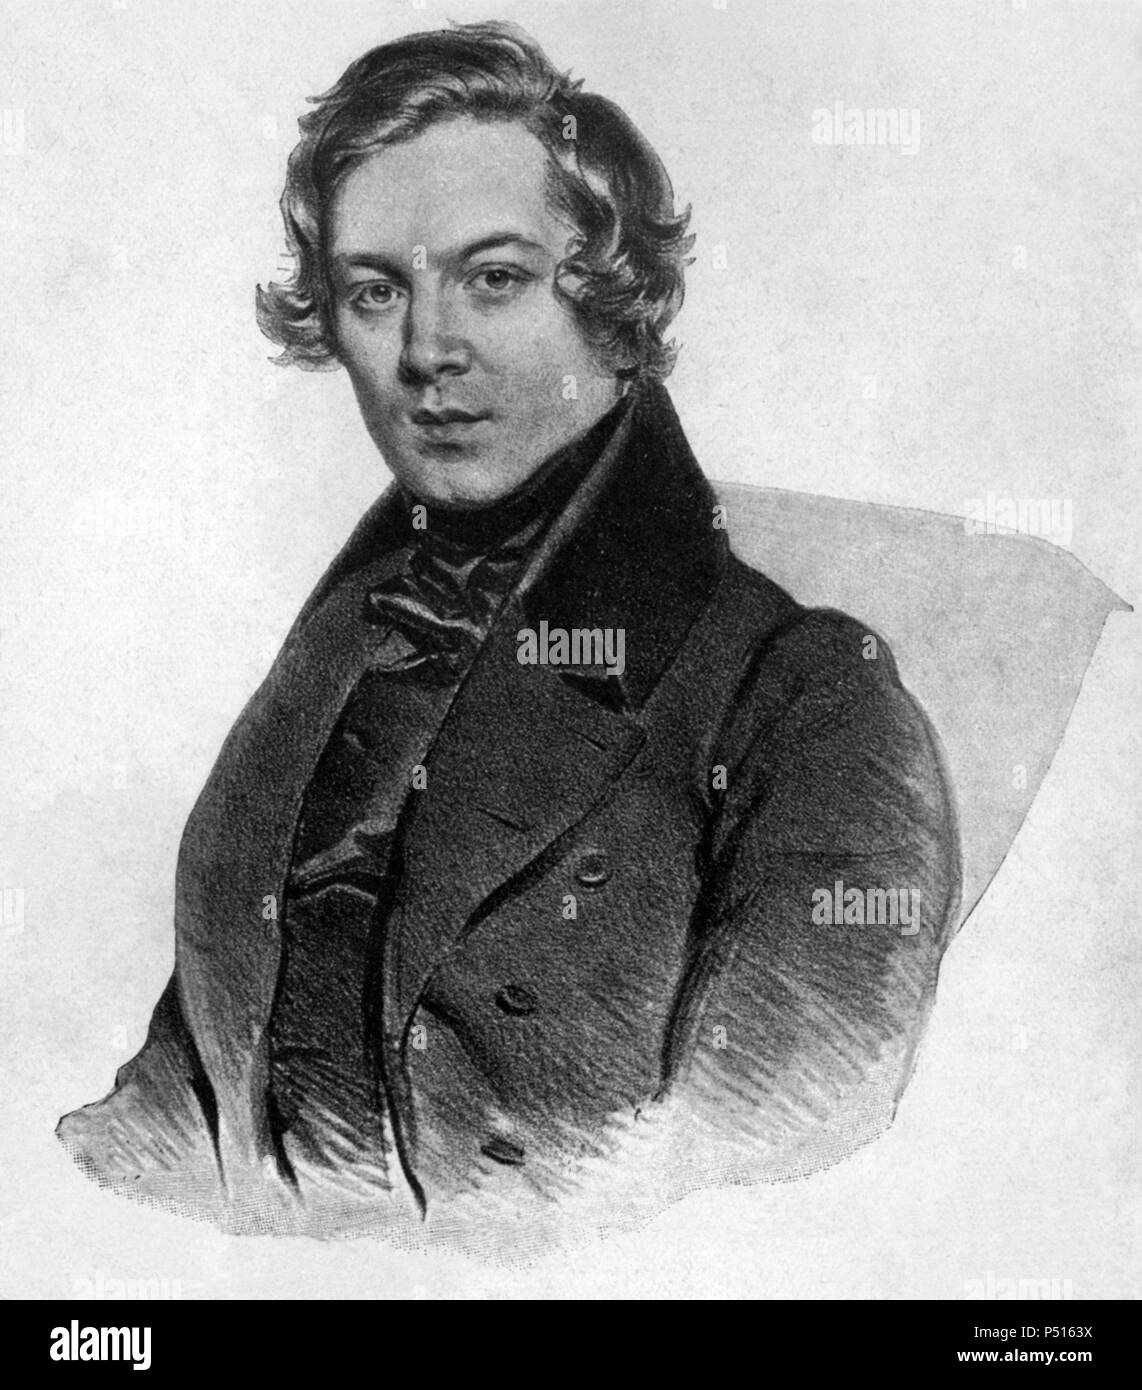 Robert Alexander Schumann (Zwickau, 1810-Endenich, 1856). Compositor y pianista alemán. Stock Photo